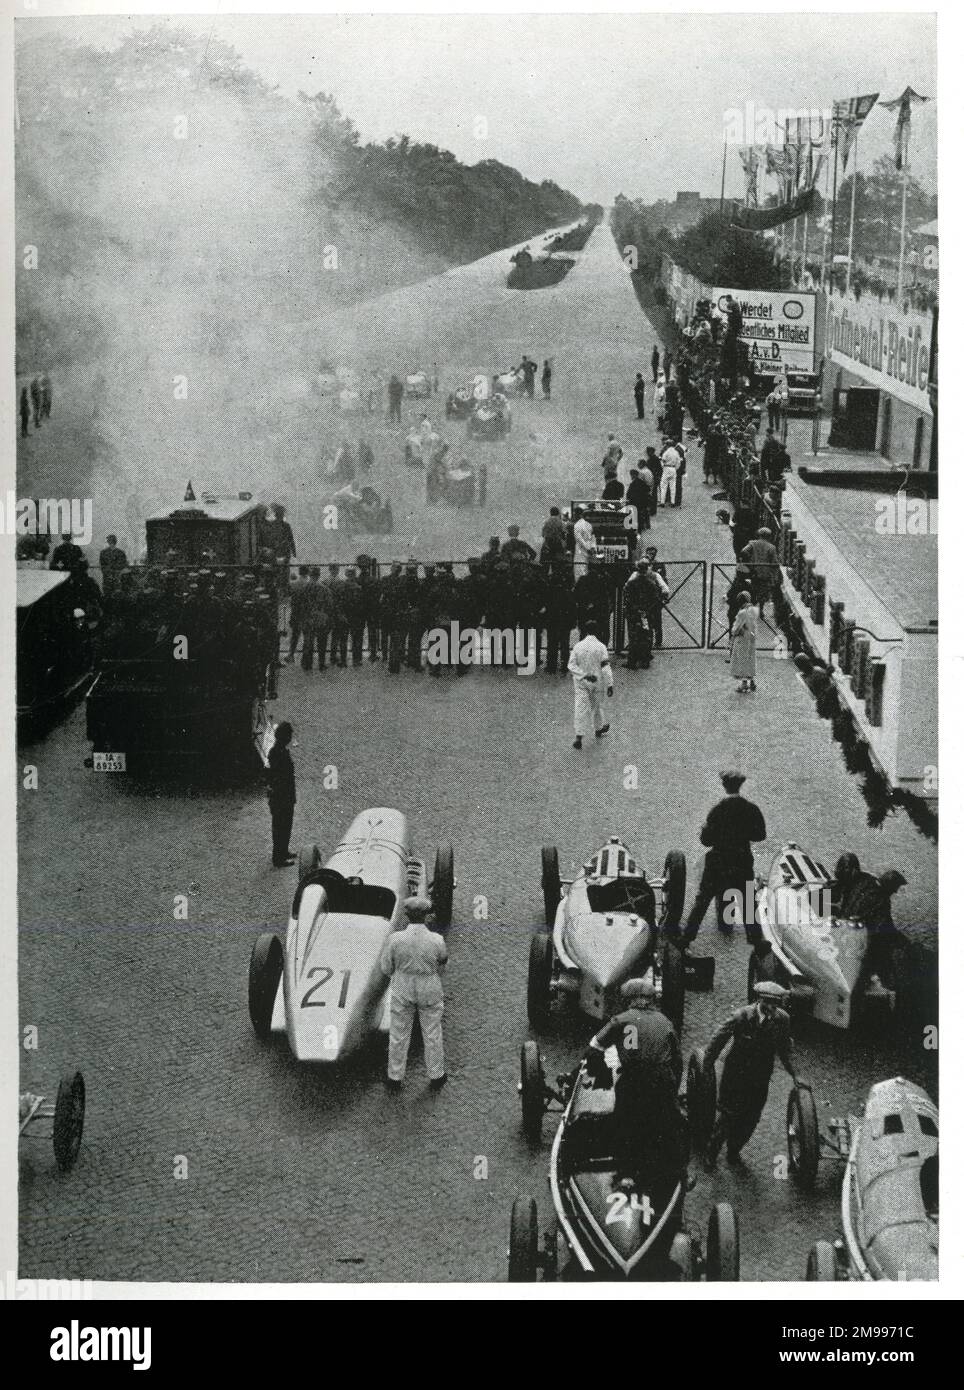 Beginn eines Rennens auf der Avus-Rennstrecke in Berlin, Deutschland, bei dem die zwei Geraden in der Ferne gezeigt werden. Stockfoto